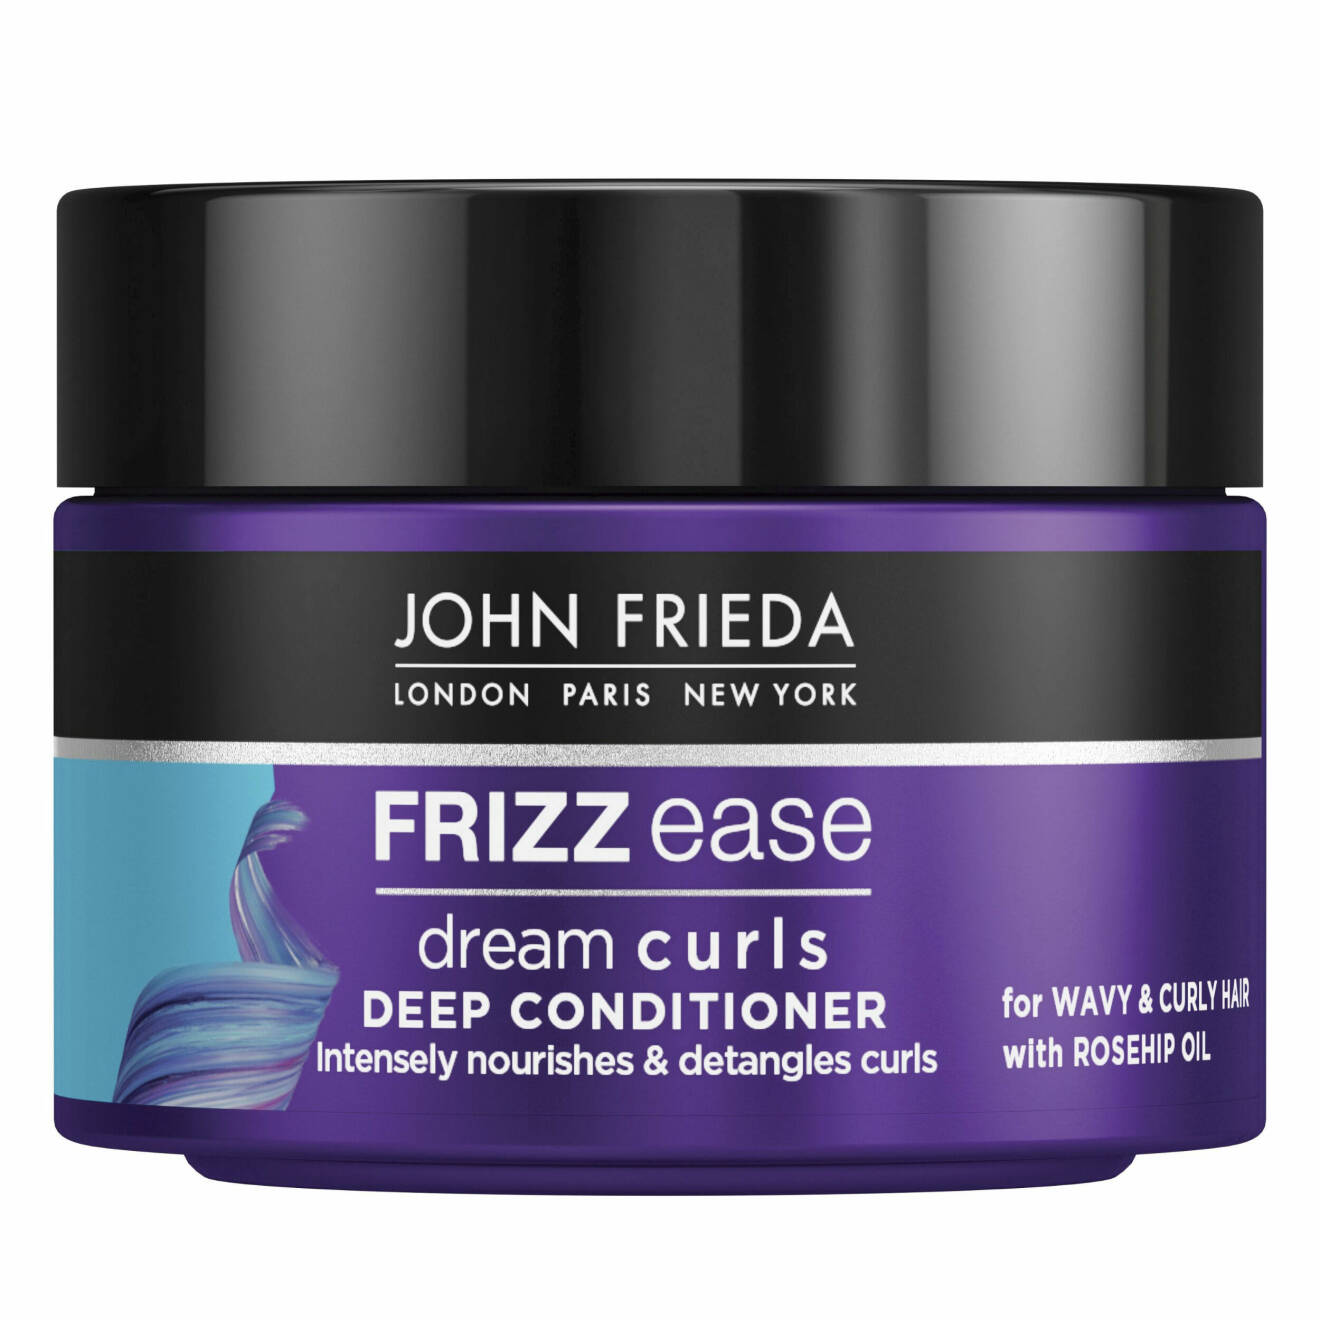 Dream Curls Deep Conditioner från John Frieda.